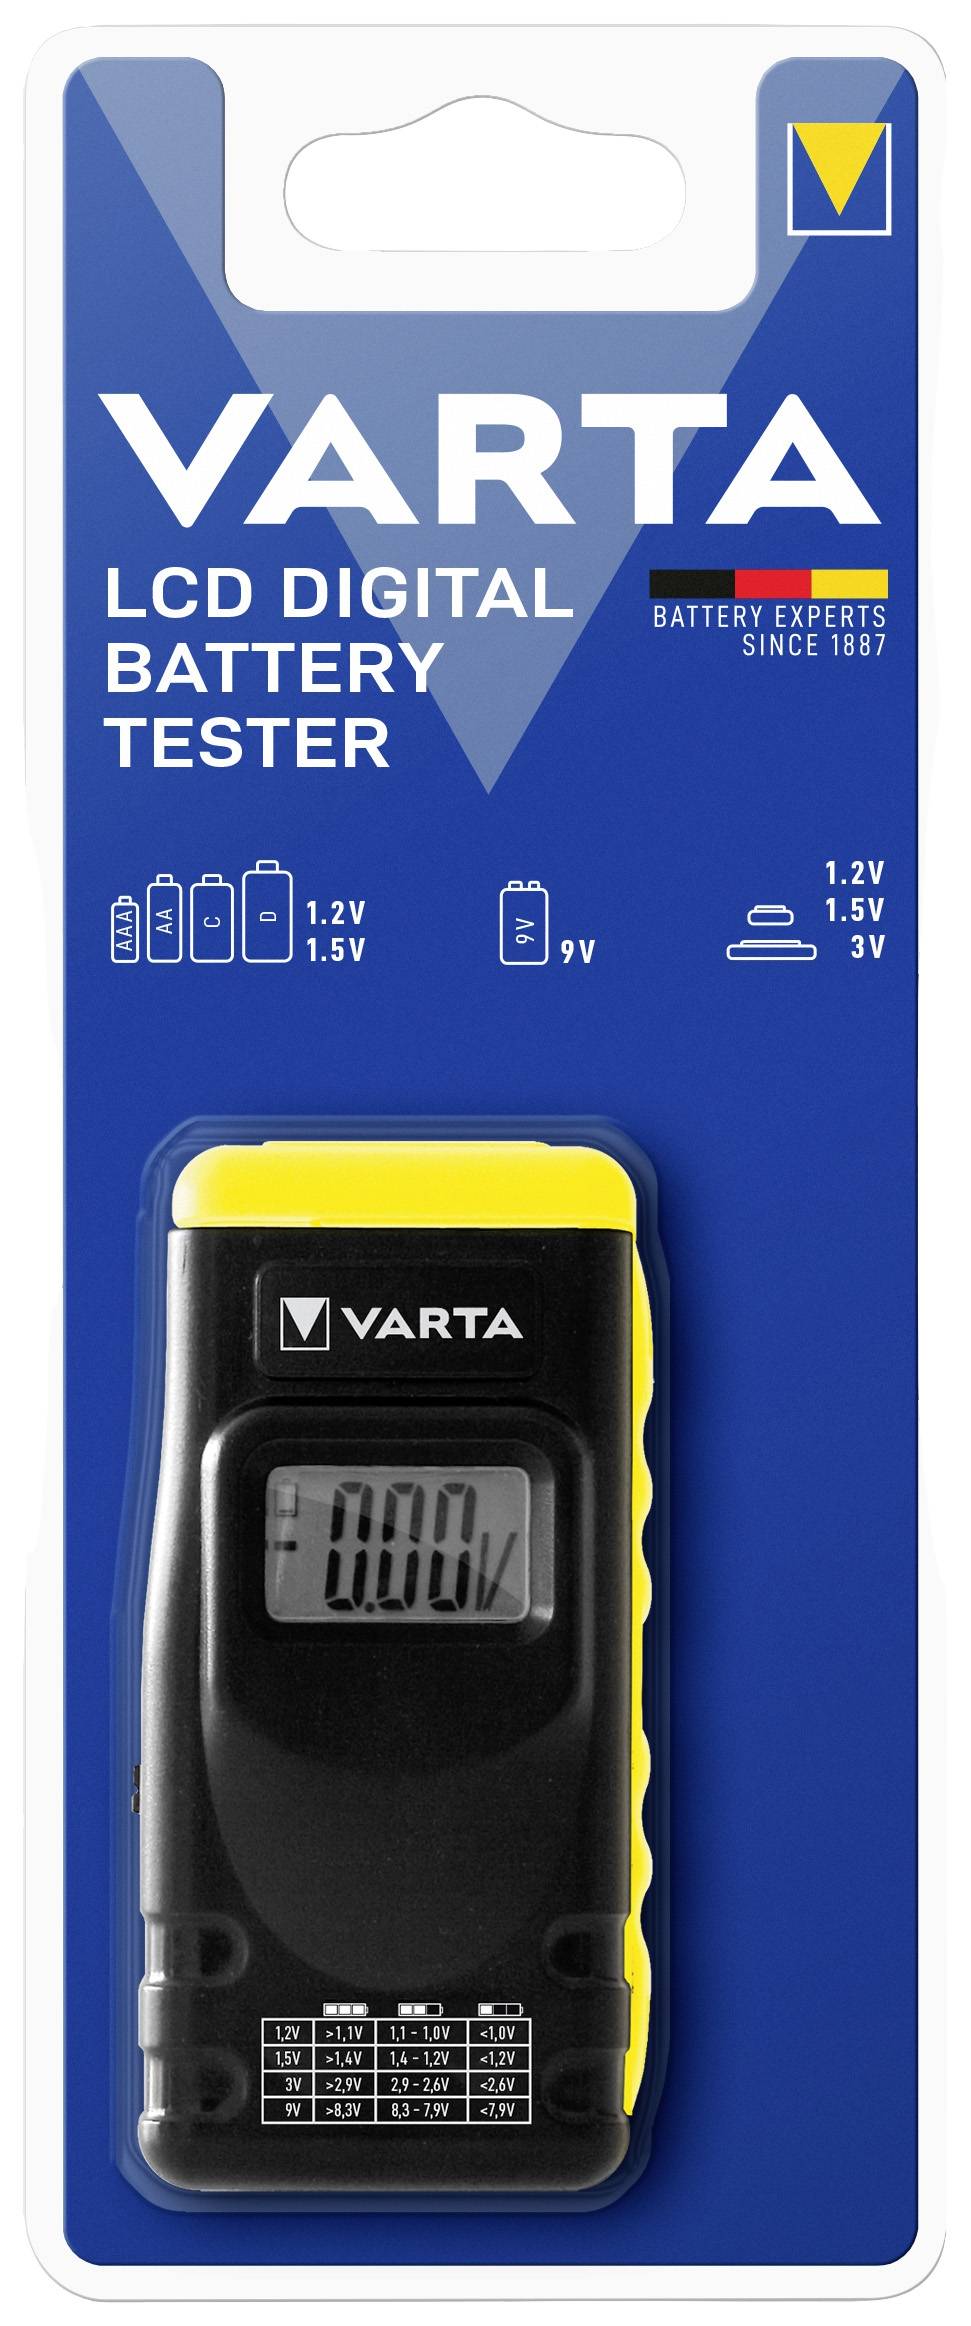 VARTA Batterie-Tester digital BATT. TESTER 891 LCD DIGITAL Digital 1,2 - 9 V